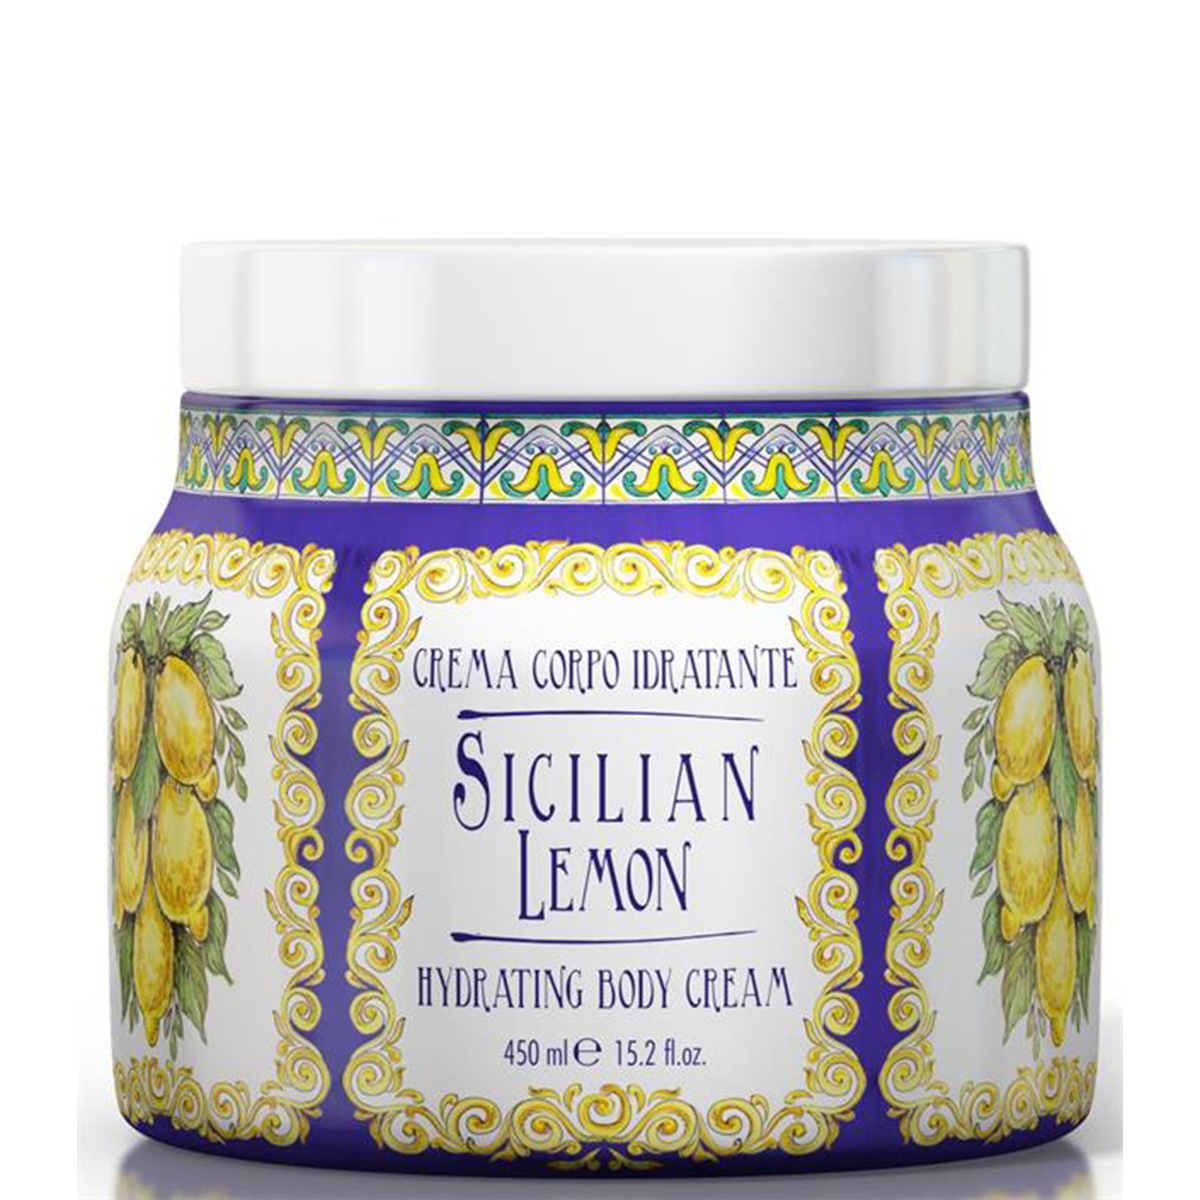 Maioliche Sicilian Lemon Body Cream 450ml